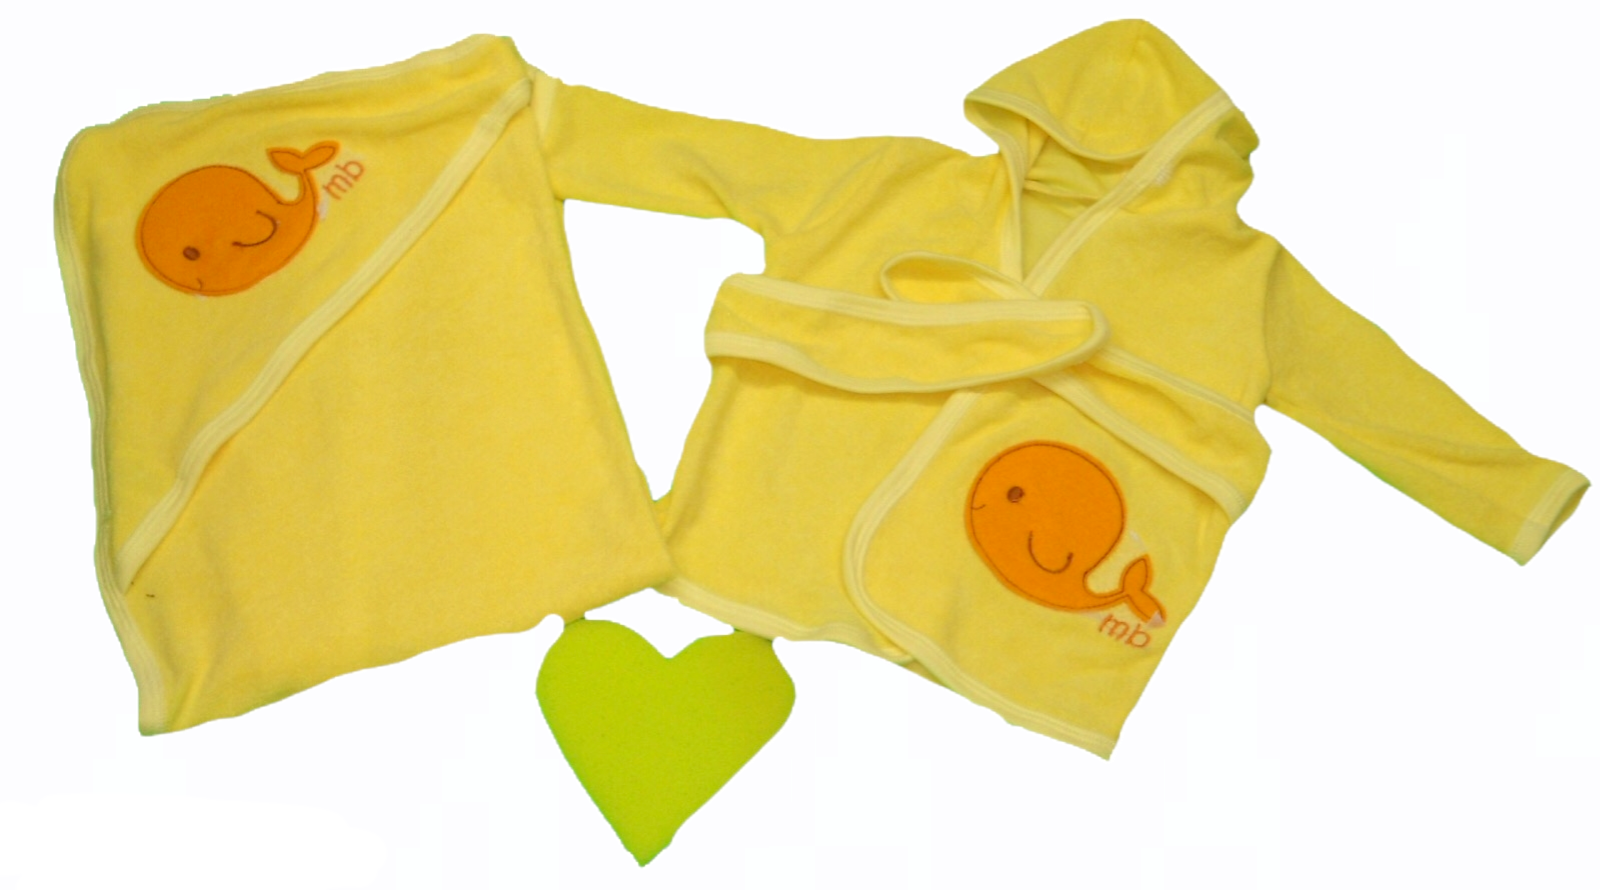 Juego de baño con tiernos bordados para bebé, incluye bata, toalla